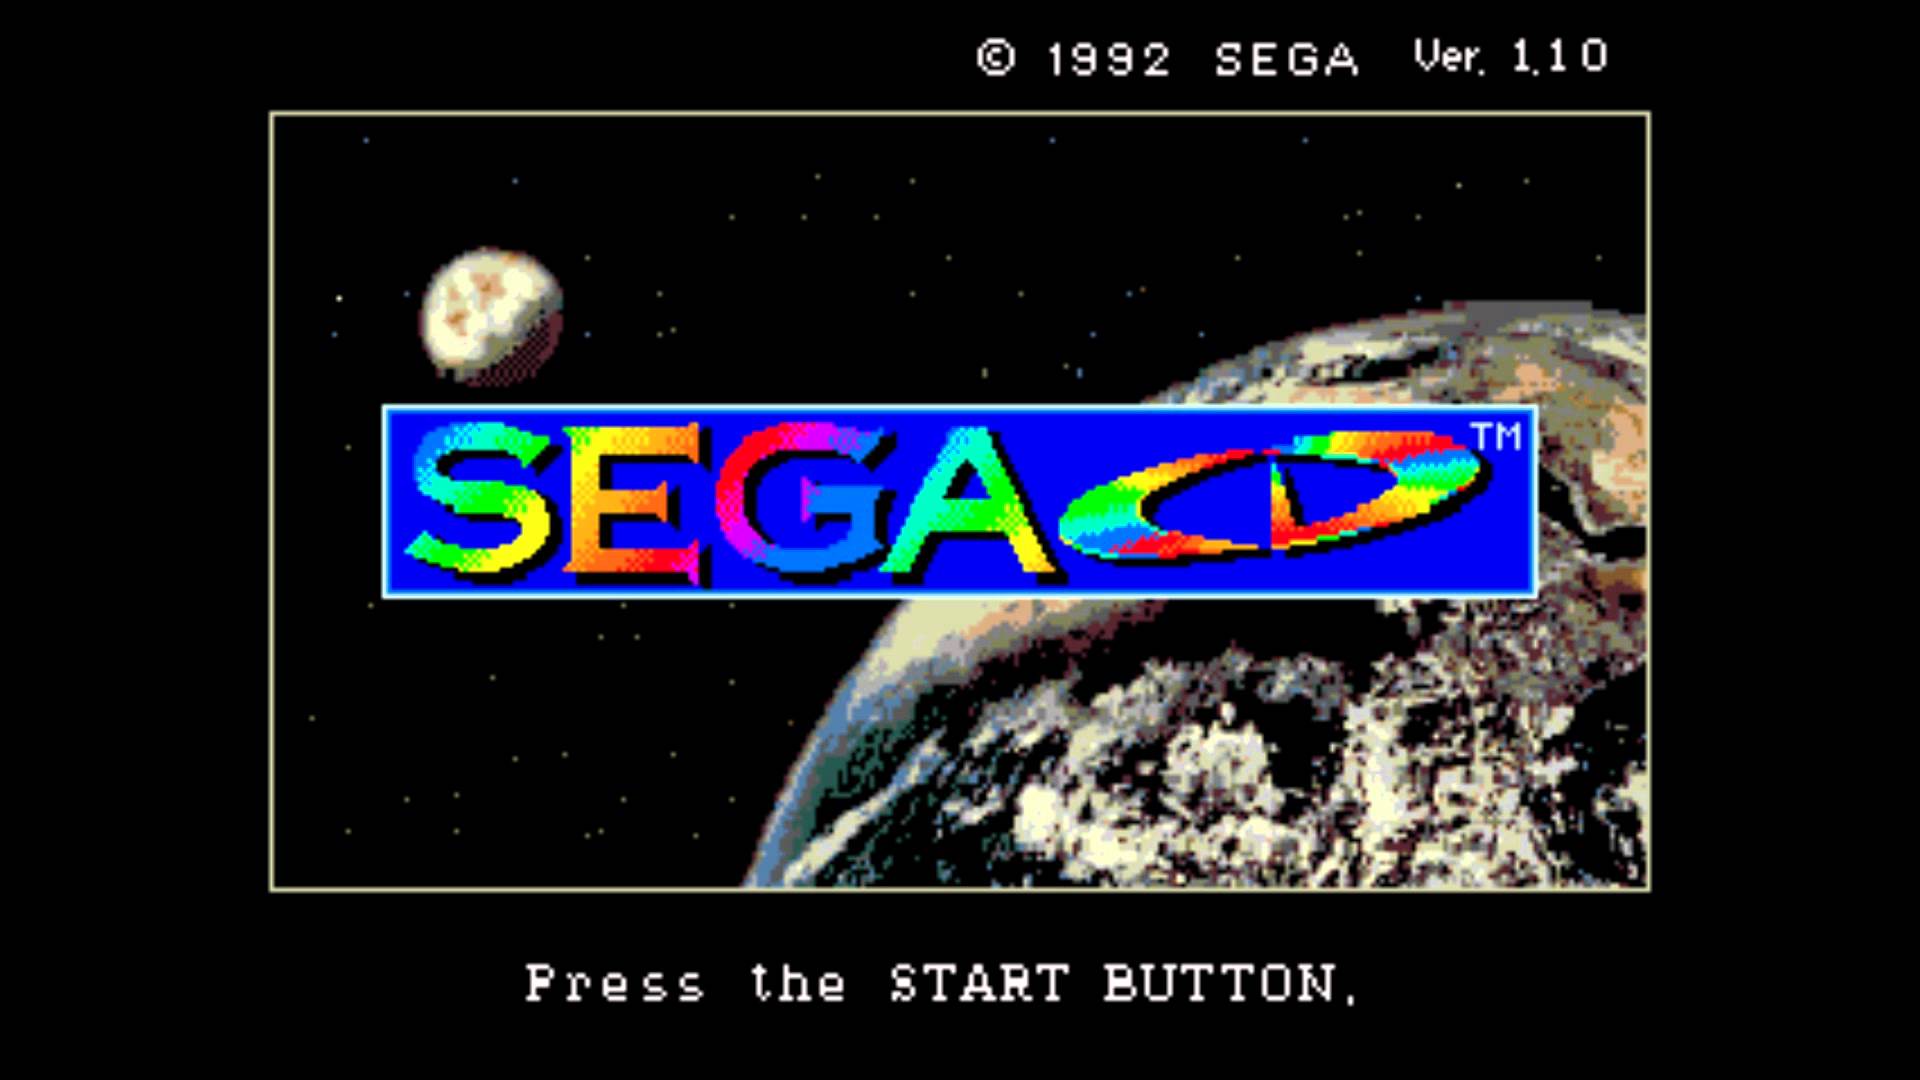 Sega mega cd bios files